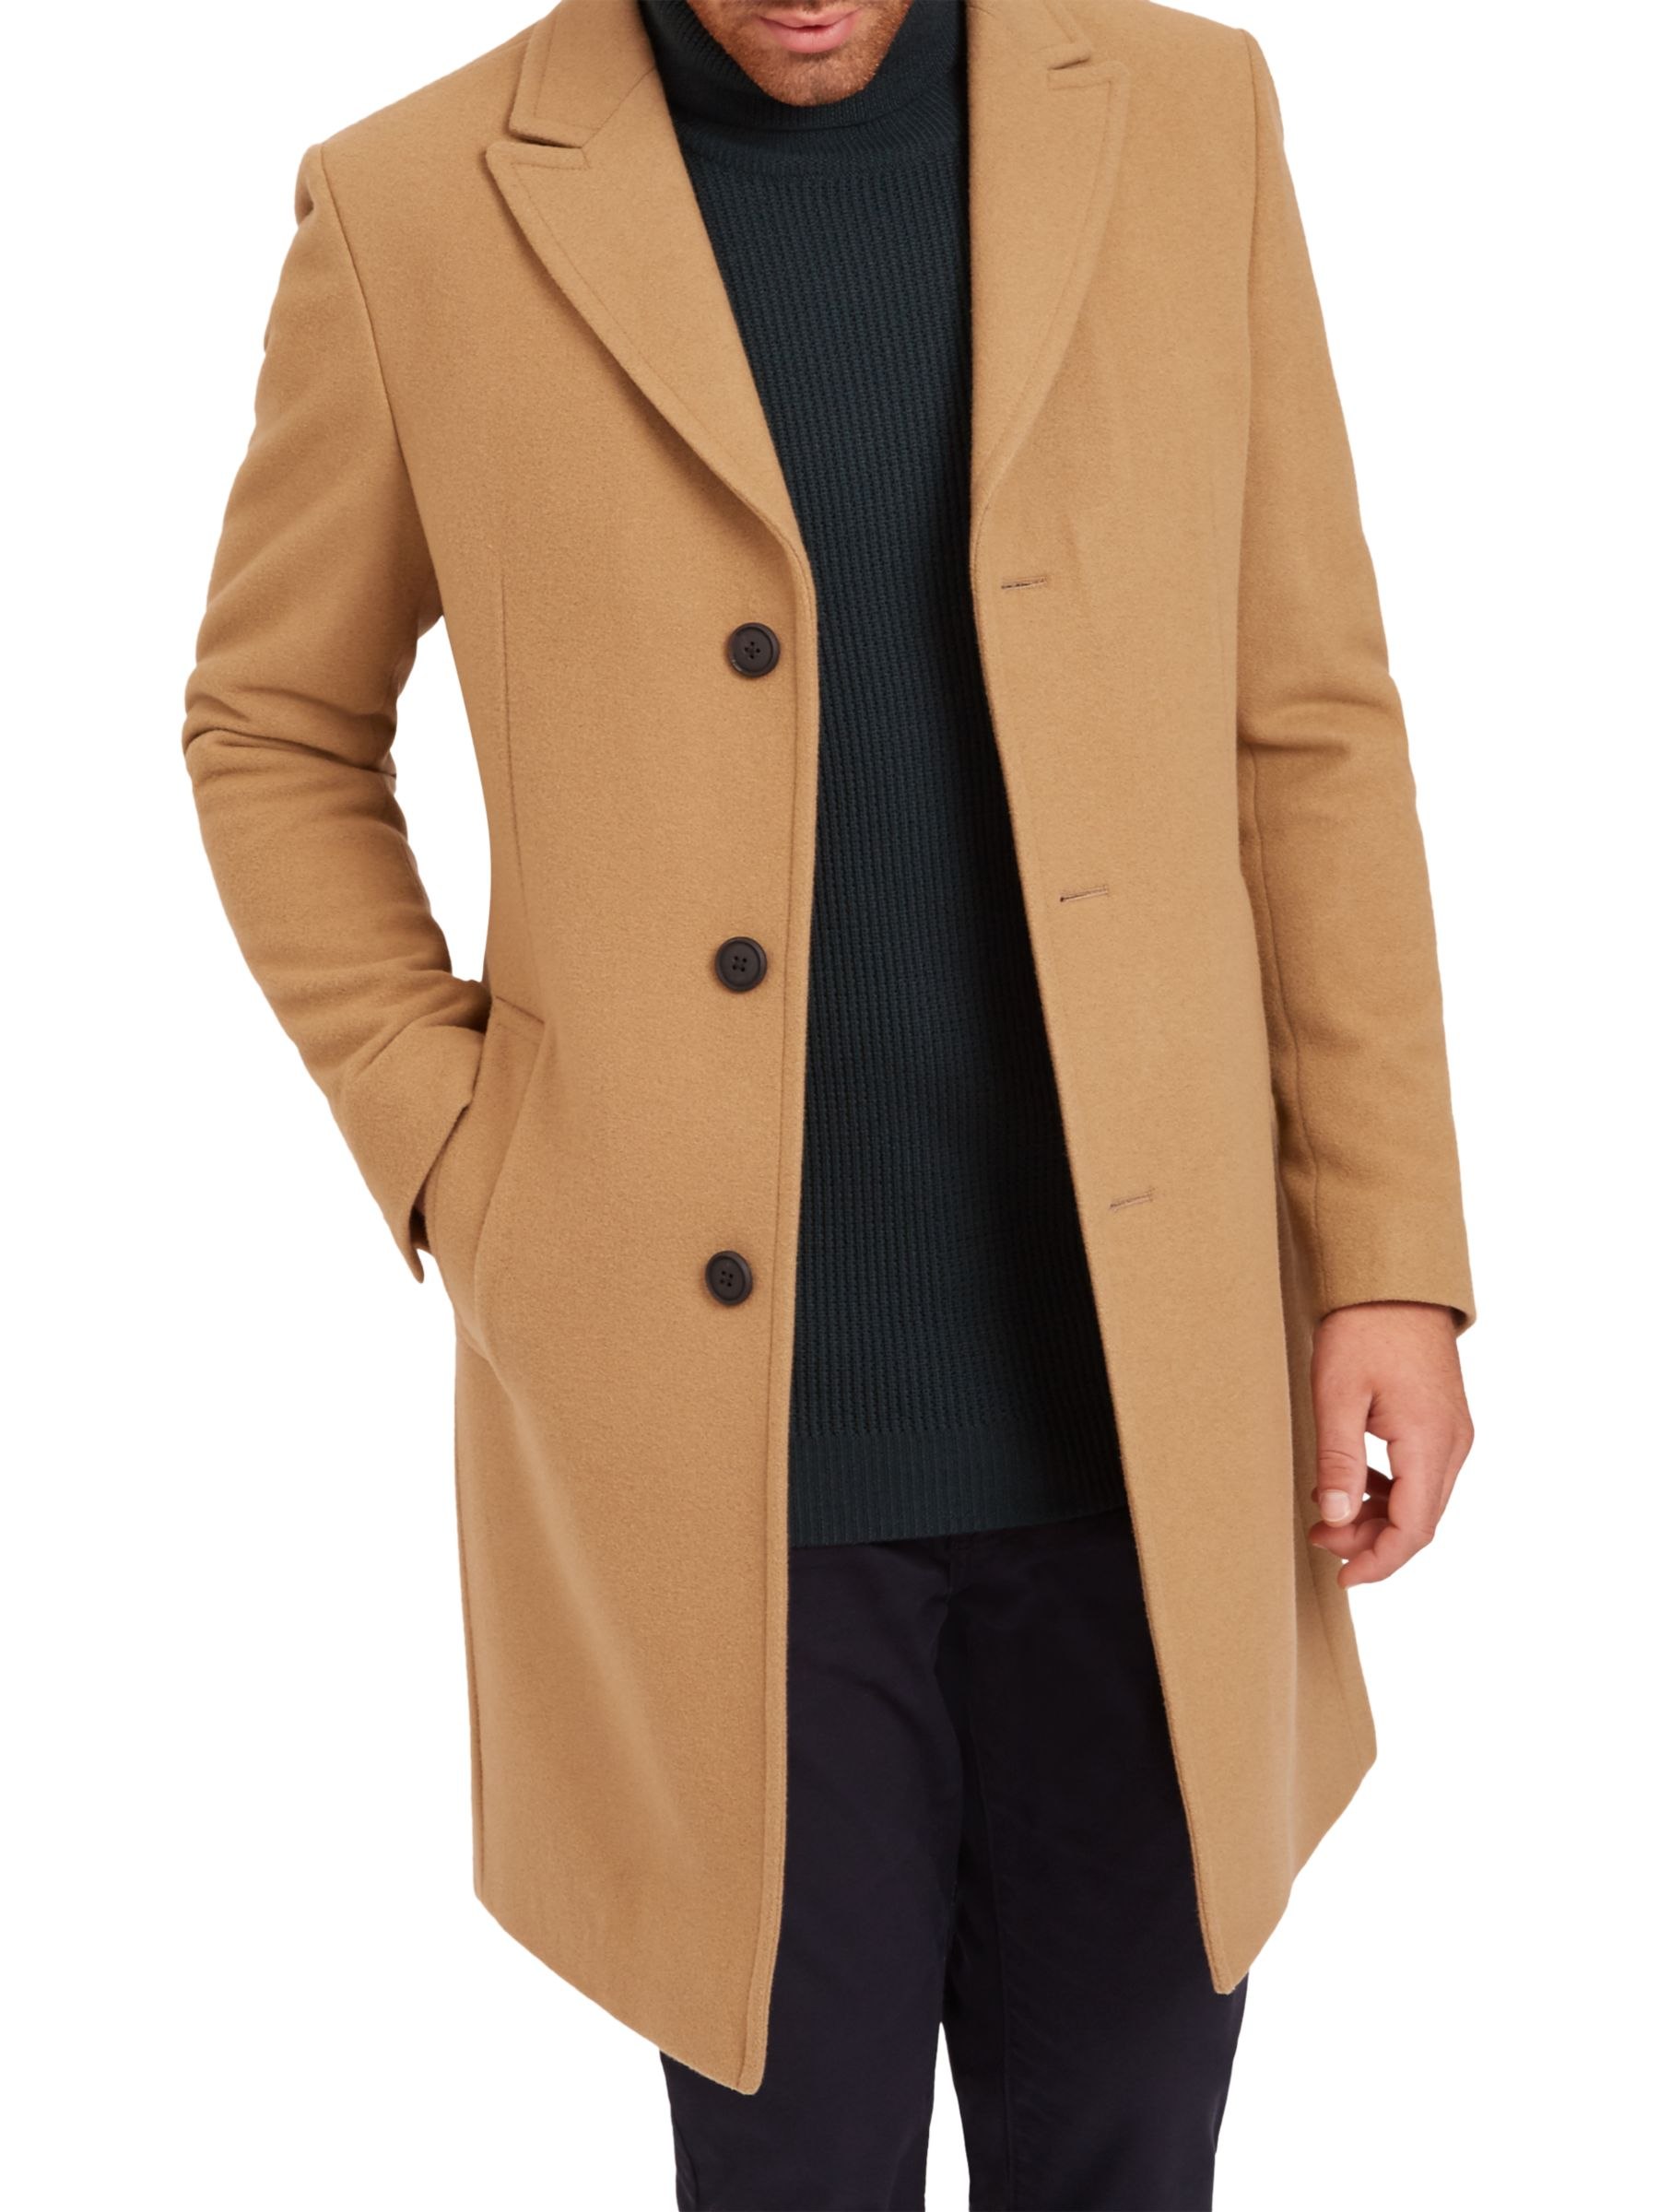 Мужское пальто озон. Боттега пальто мужское кашемировое пальто. Пальто кэмэл мужское длинное. Пальто Честерфилд мужское.